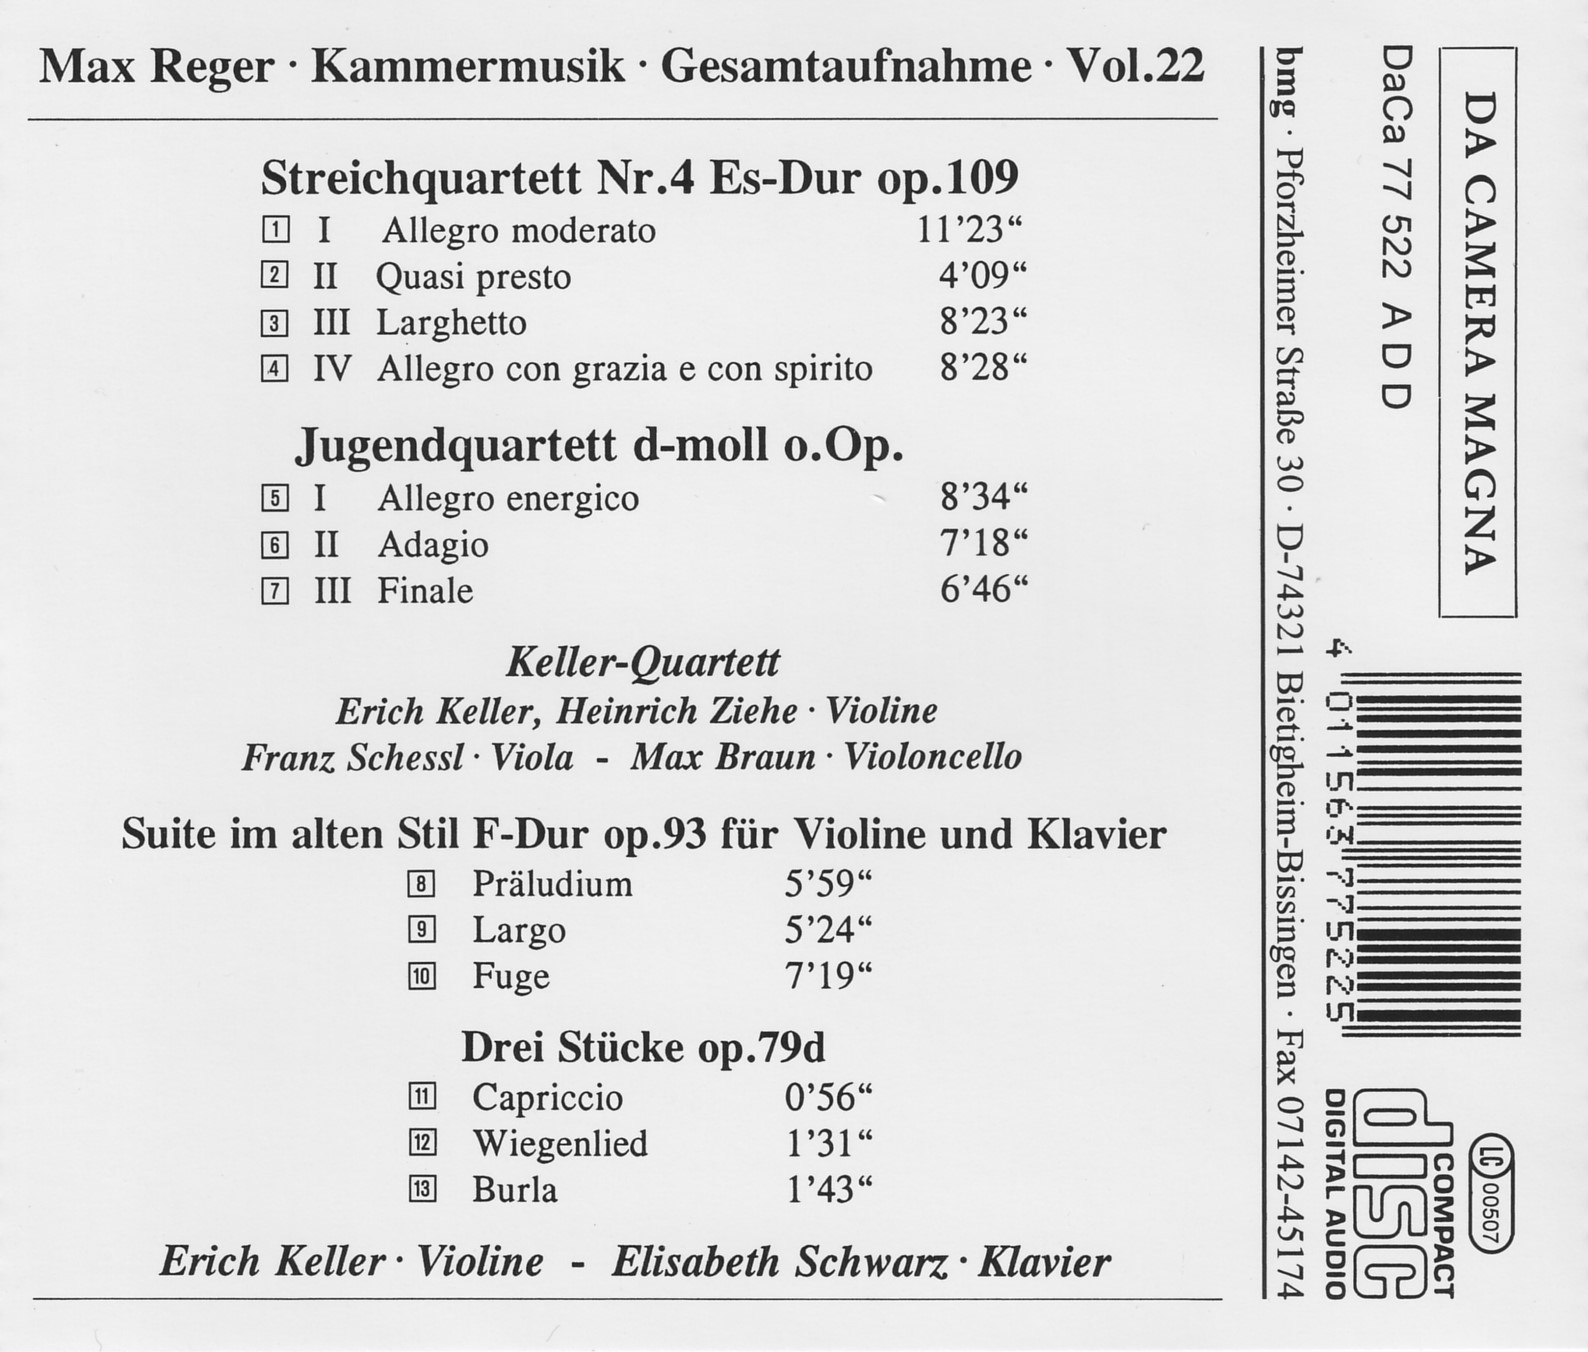 Max Reger - Kammermusik komplett Vol. 22